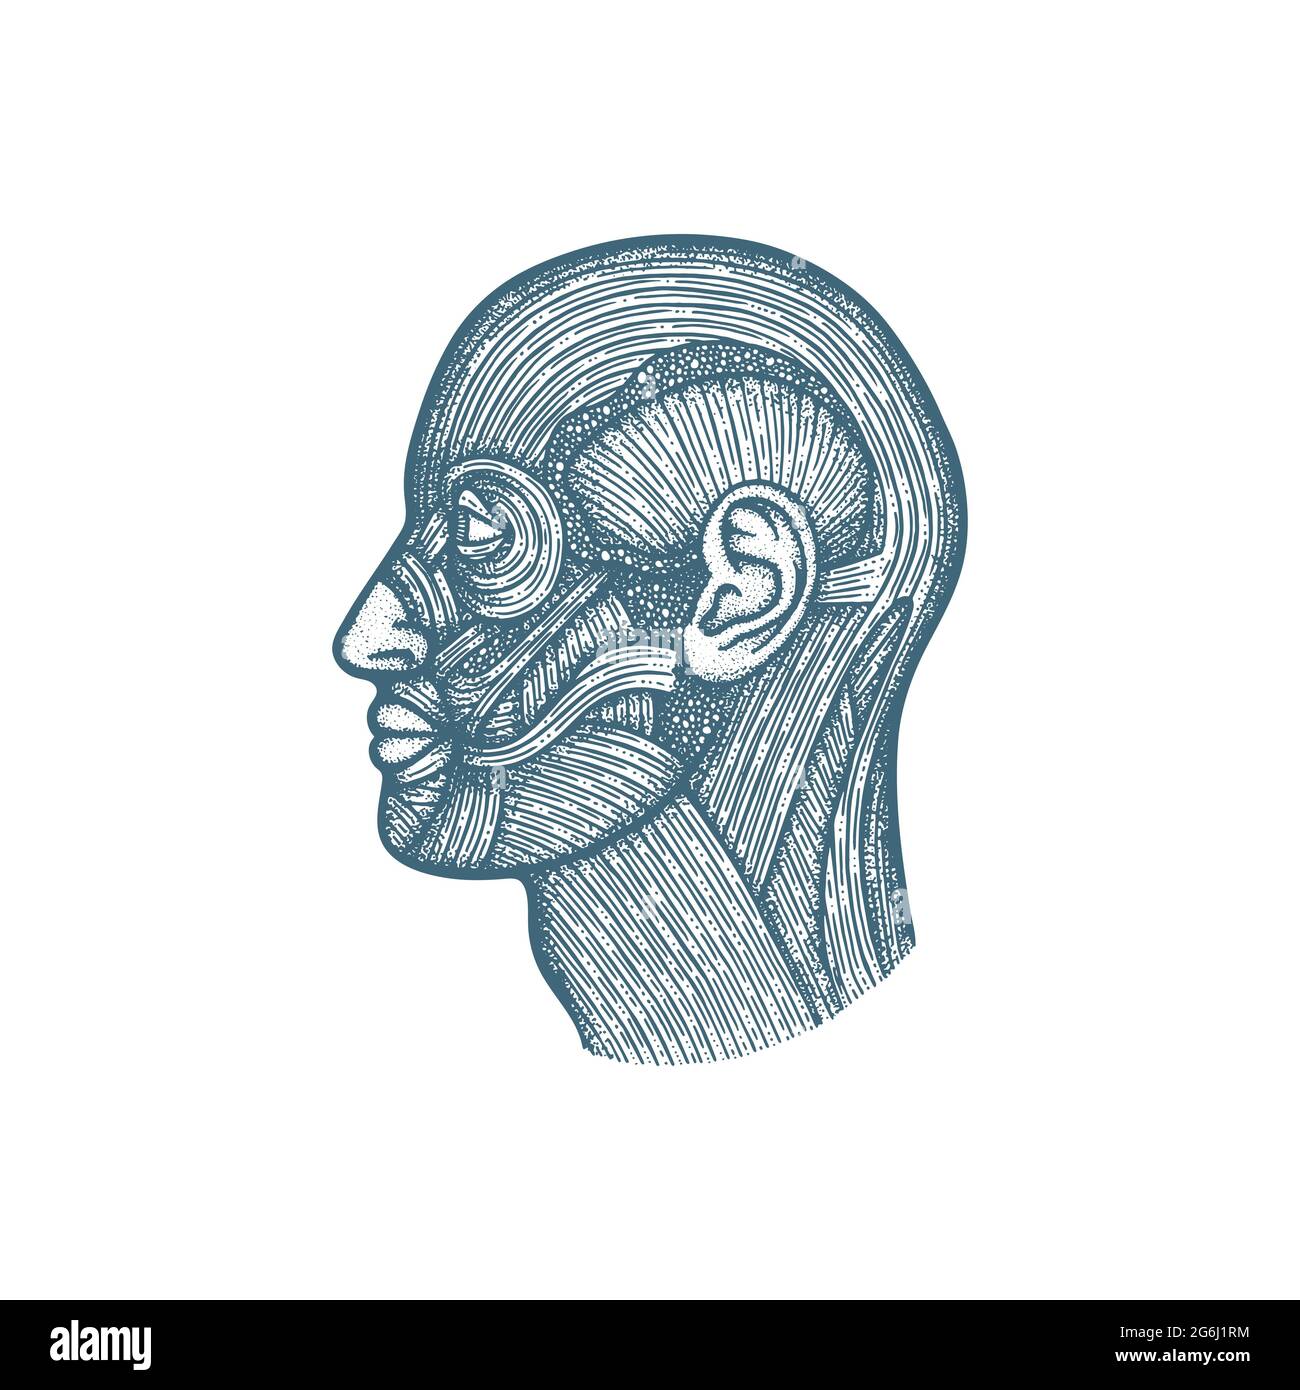 Immagine vettoriale disegnata a mano dell'anatomia del sistema muscolare della testa. Muscolatura del volto umano disegno di stile d'incisione vintage. Poster medico. Parte del set. Illustrazione Vettoriale